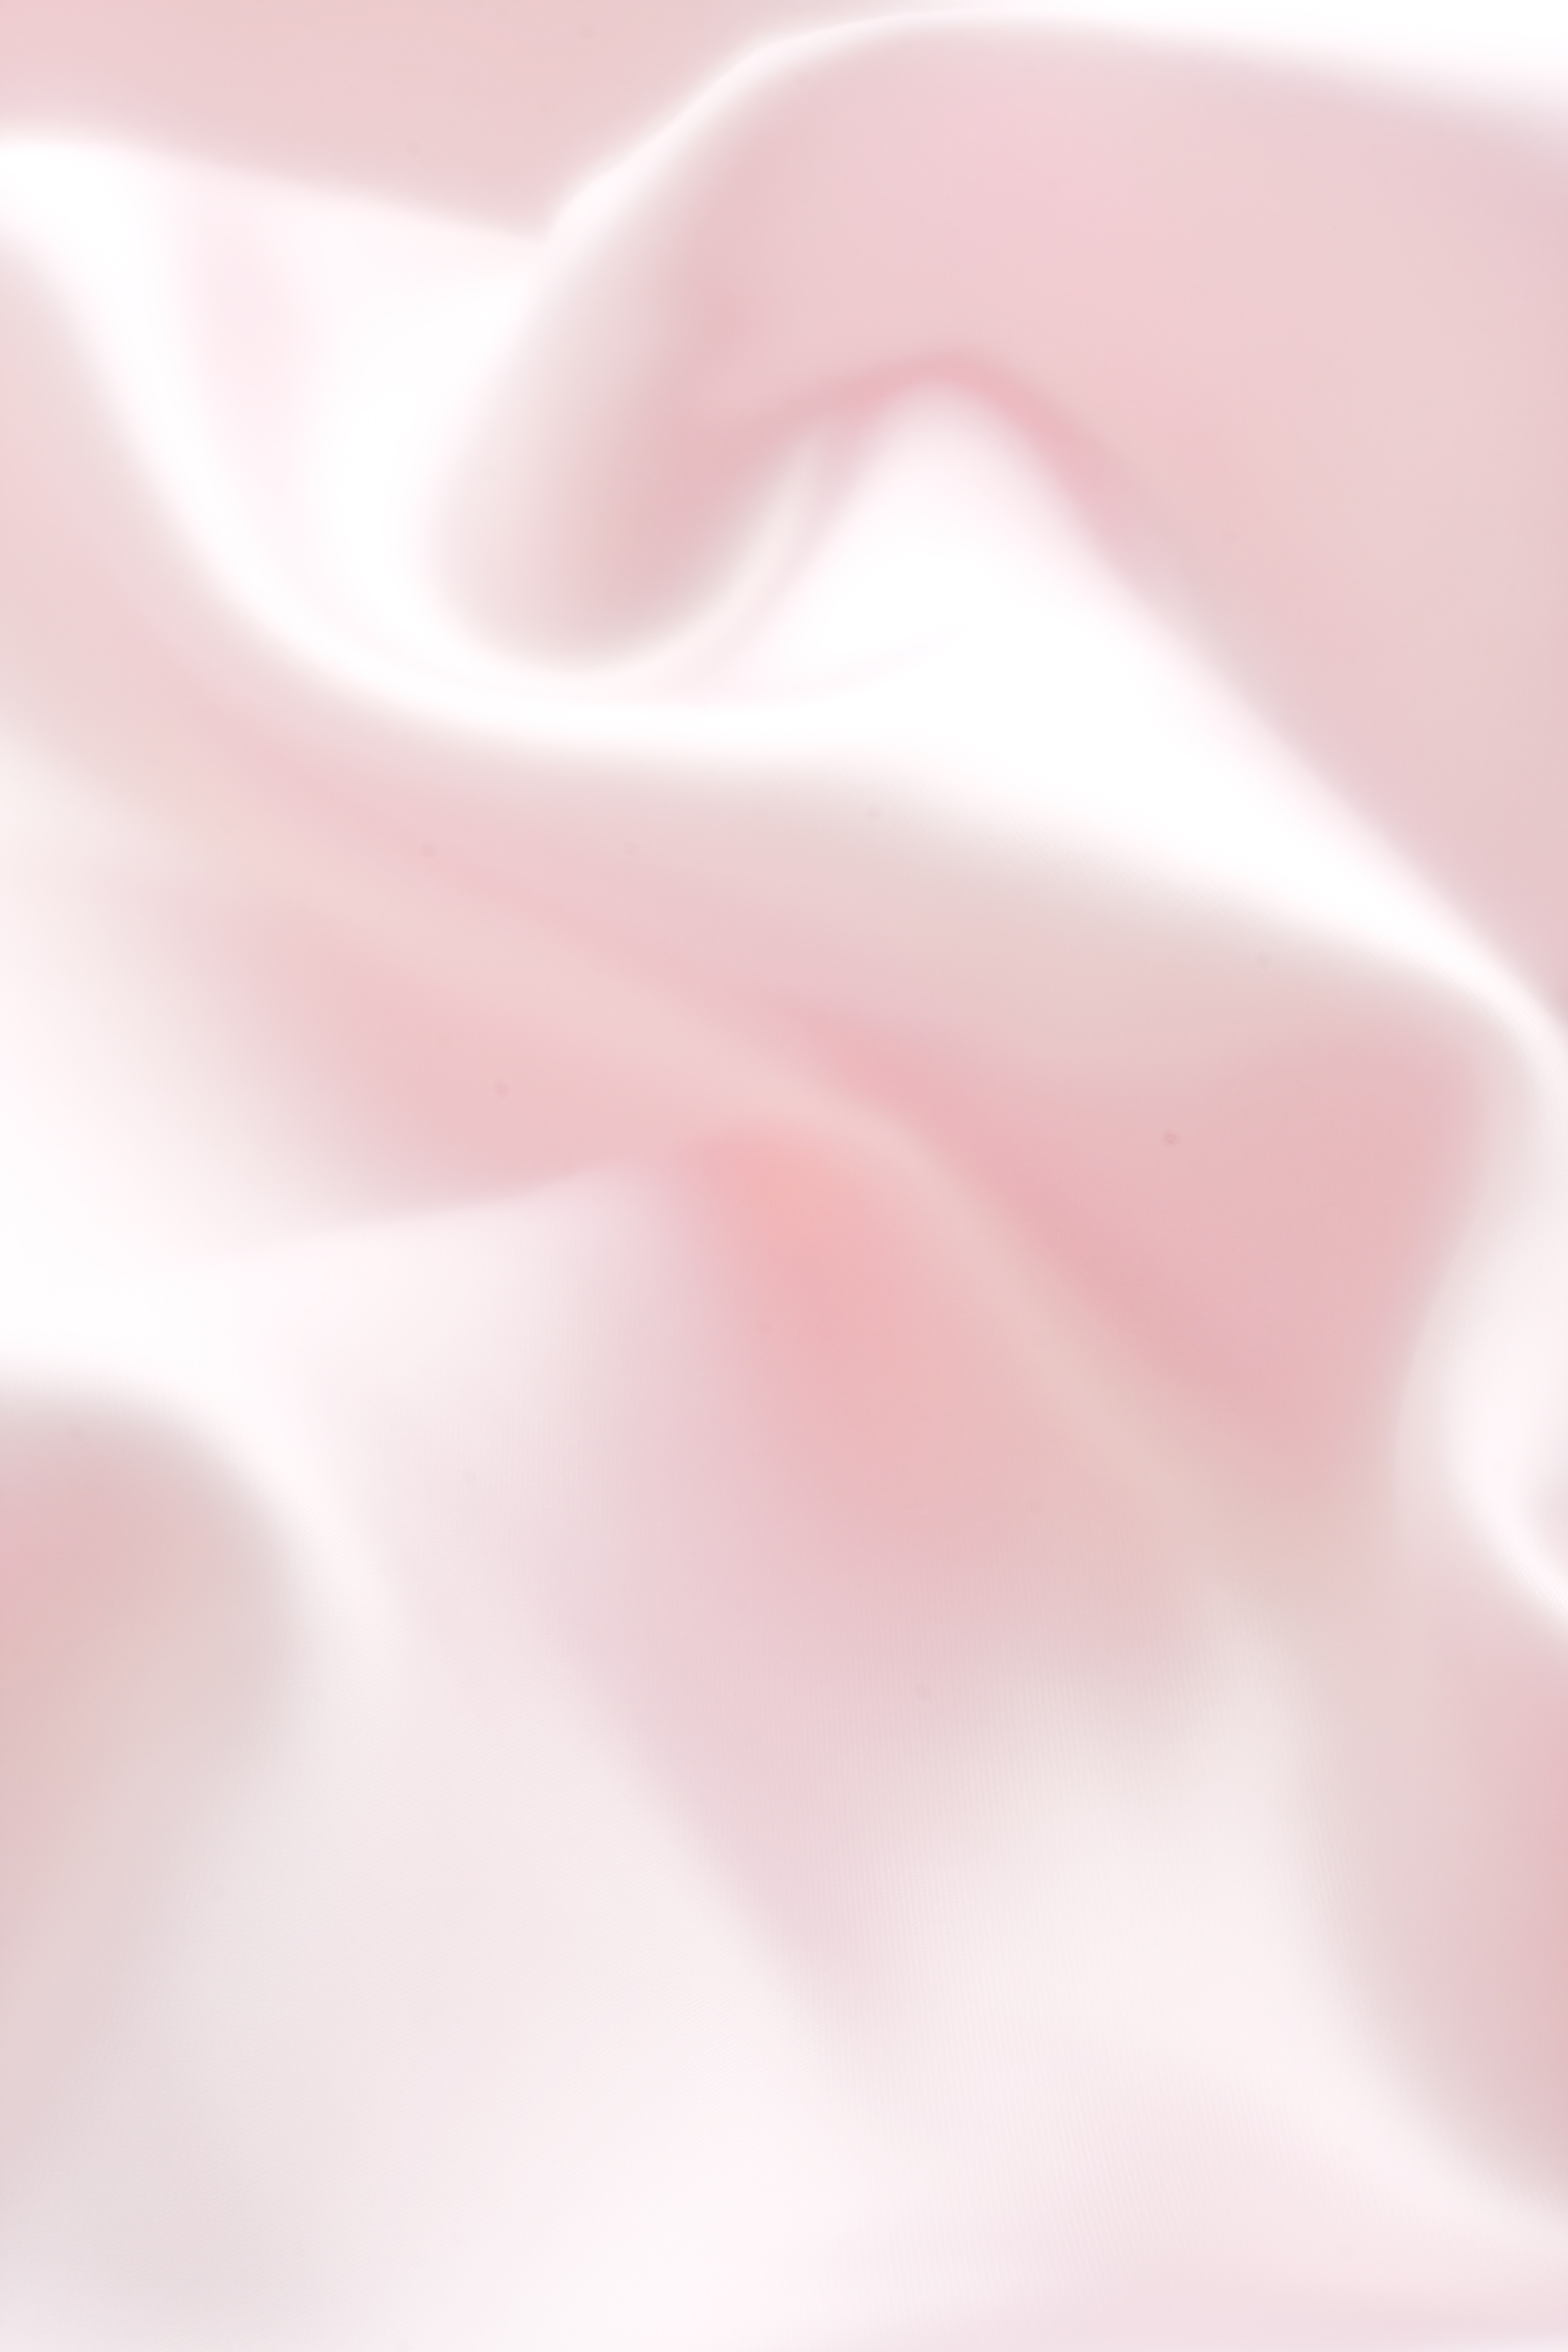 ピンクの布 サテン シルクイメージのフリー素材 無料写真素材集 オブジェクト バックグラウンド 背景 k0040 066 ダウンロード 高解像度画像 無料写真素材のプロ フォト